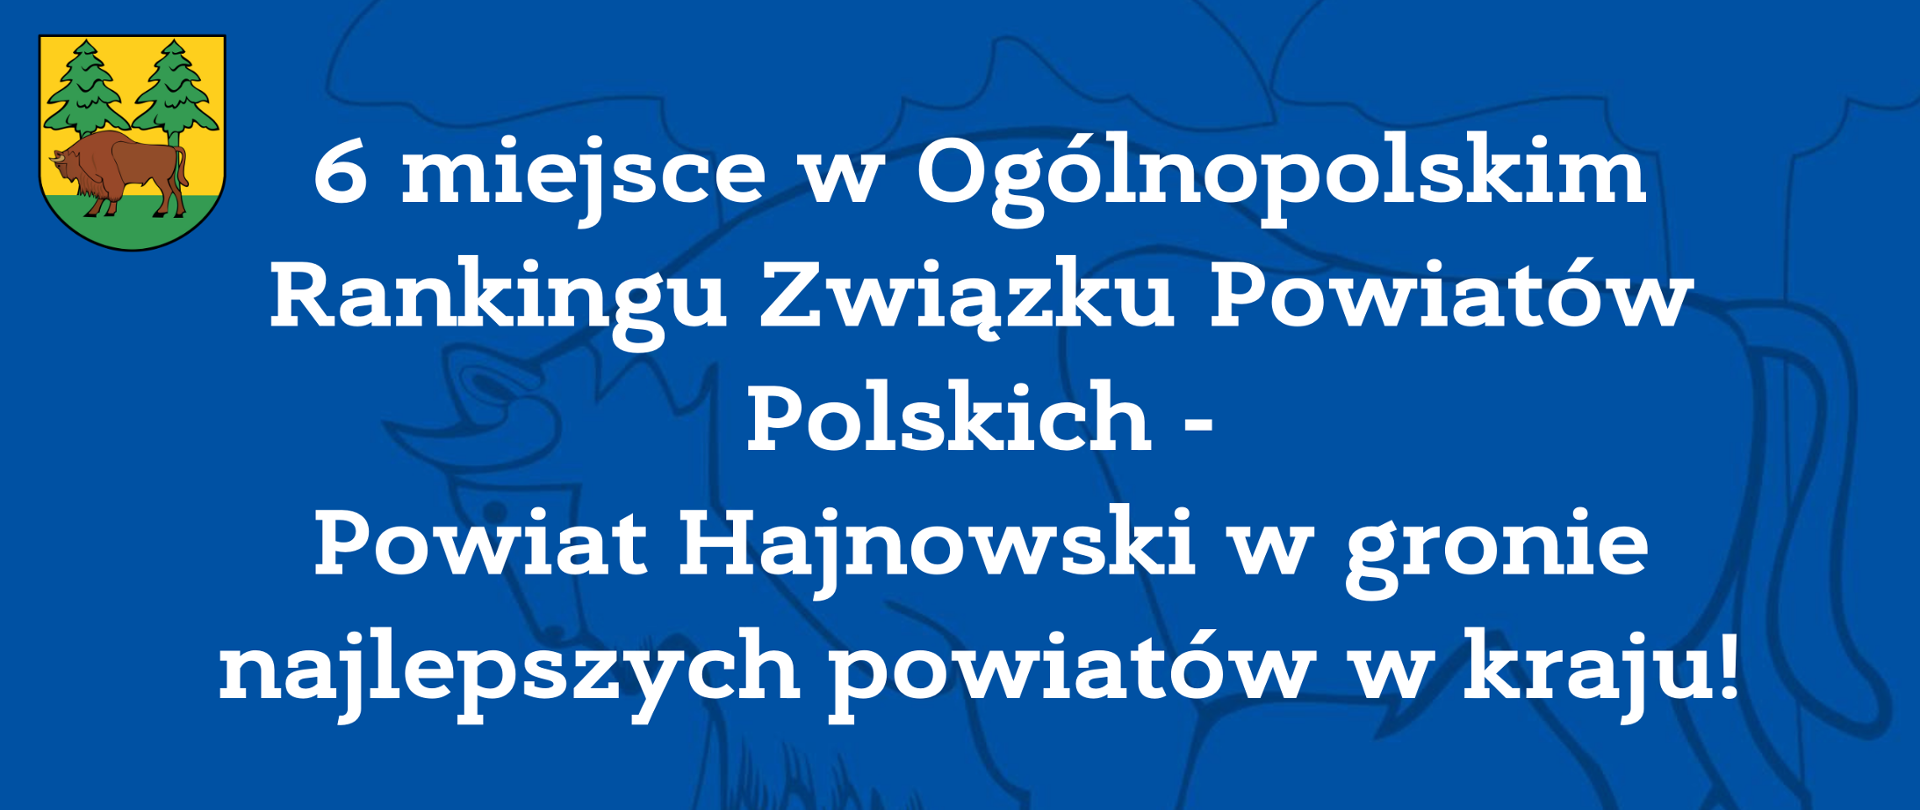 6 miejsce w Ogólnopolskim Rankingu Związku Powiatów Polskich - Powiat Hajnowski w gronie najlepszych powiatów w kraju!